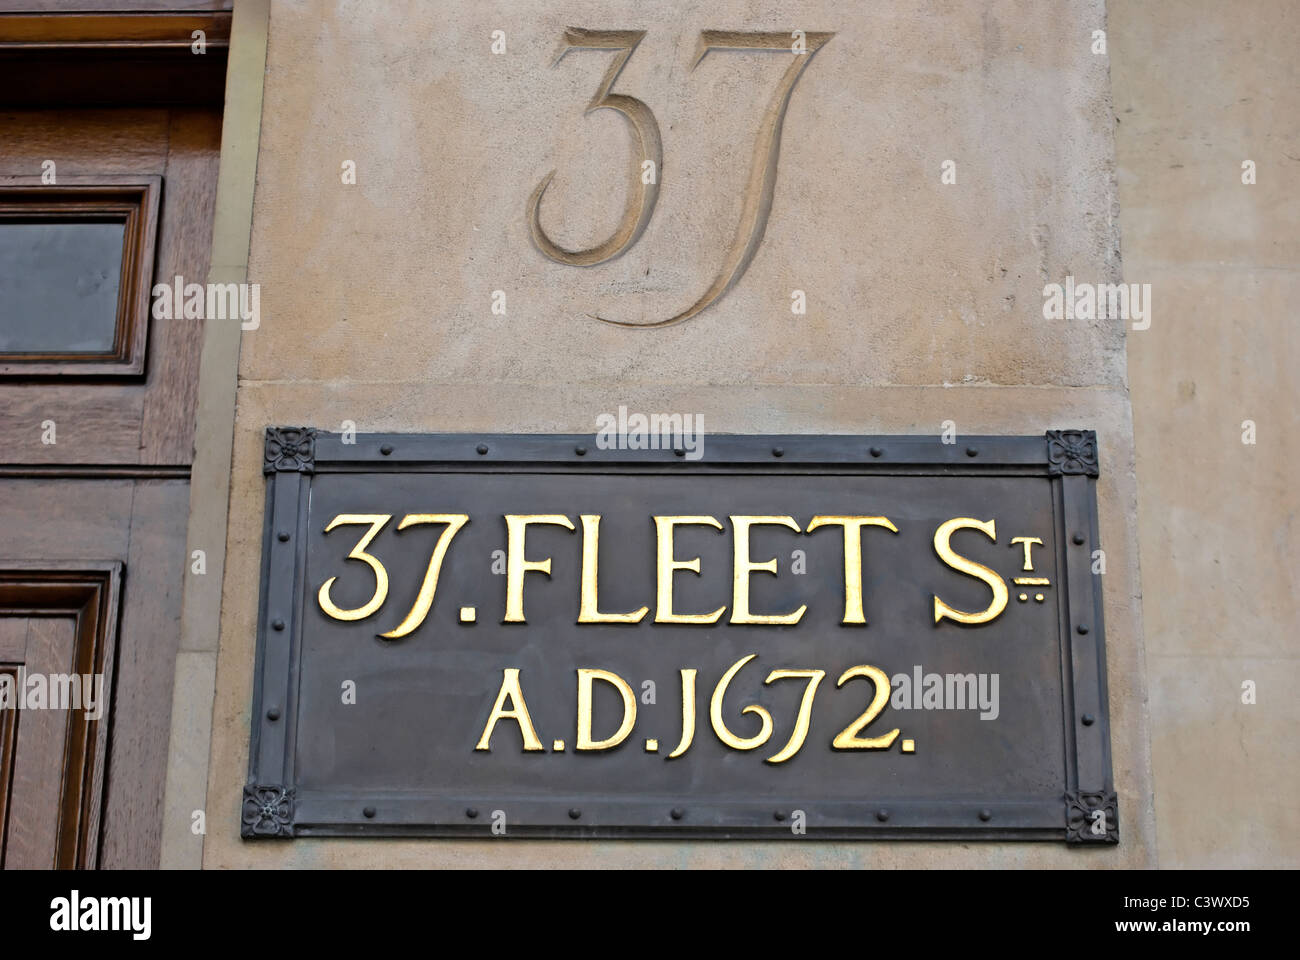 Melden Sie bei 37 Fleet Street, London, England, mit Datum 1672 unter Bezugnahme auf die Gründung der noch bestehenden private Bank, hoare Stockfoto